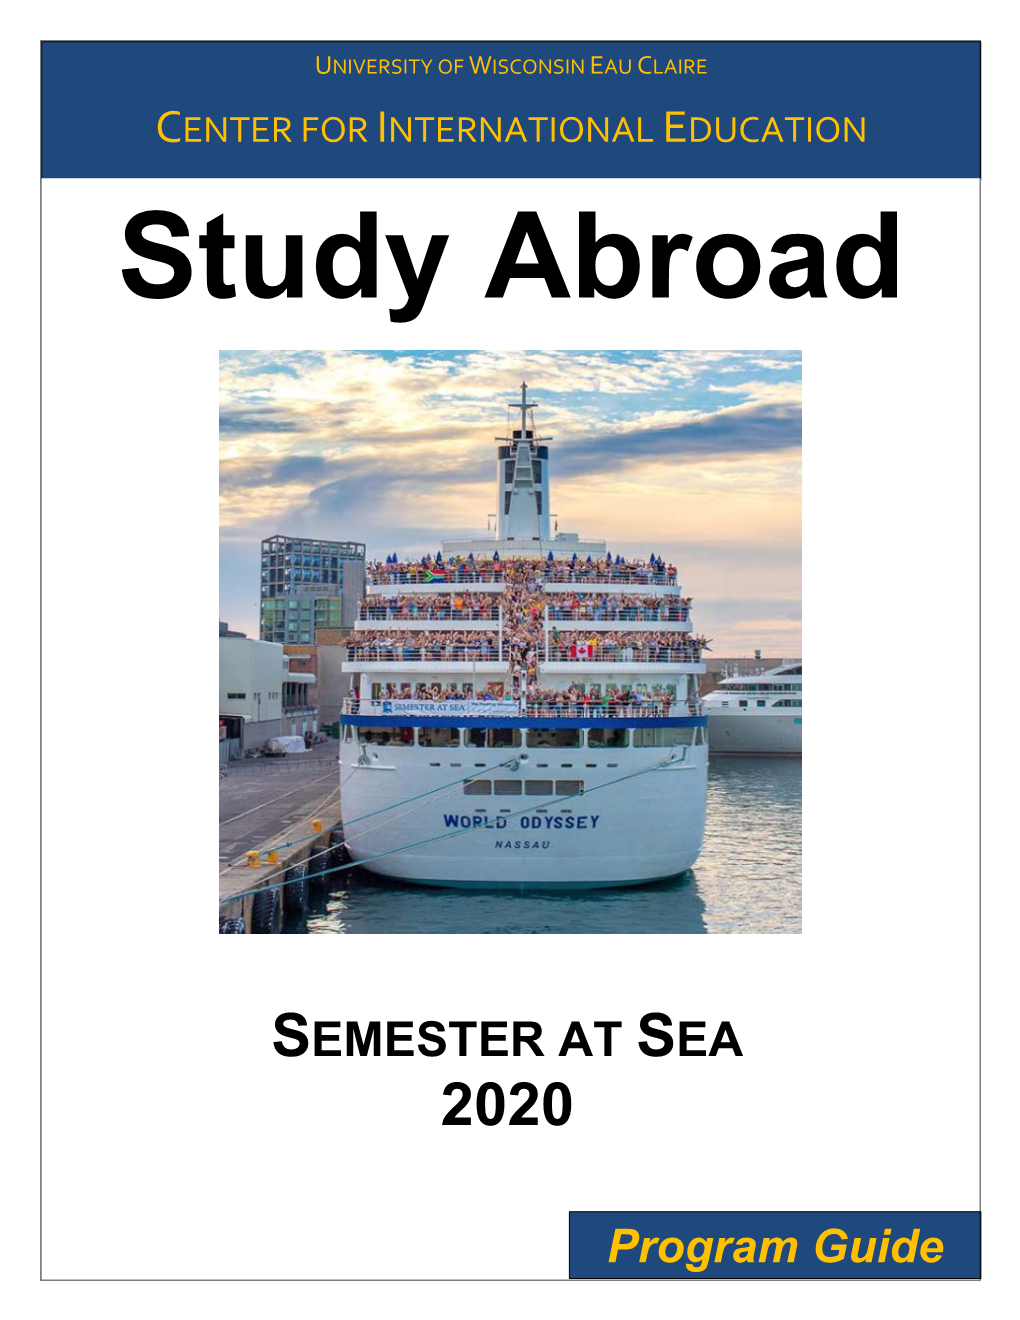 Semester at Sea 2020